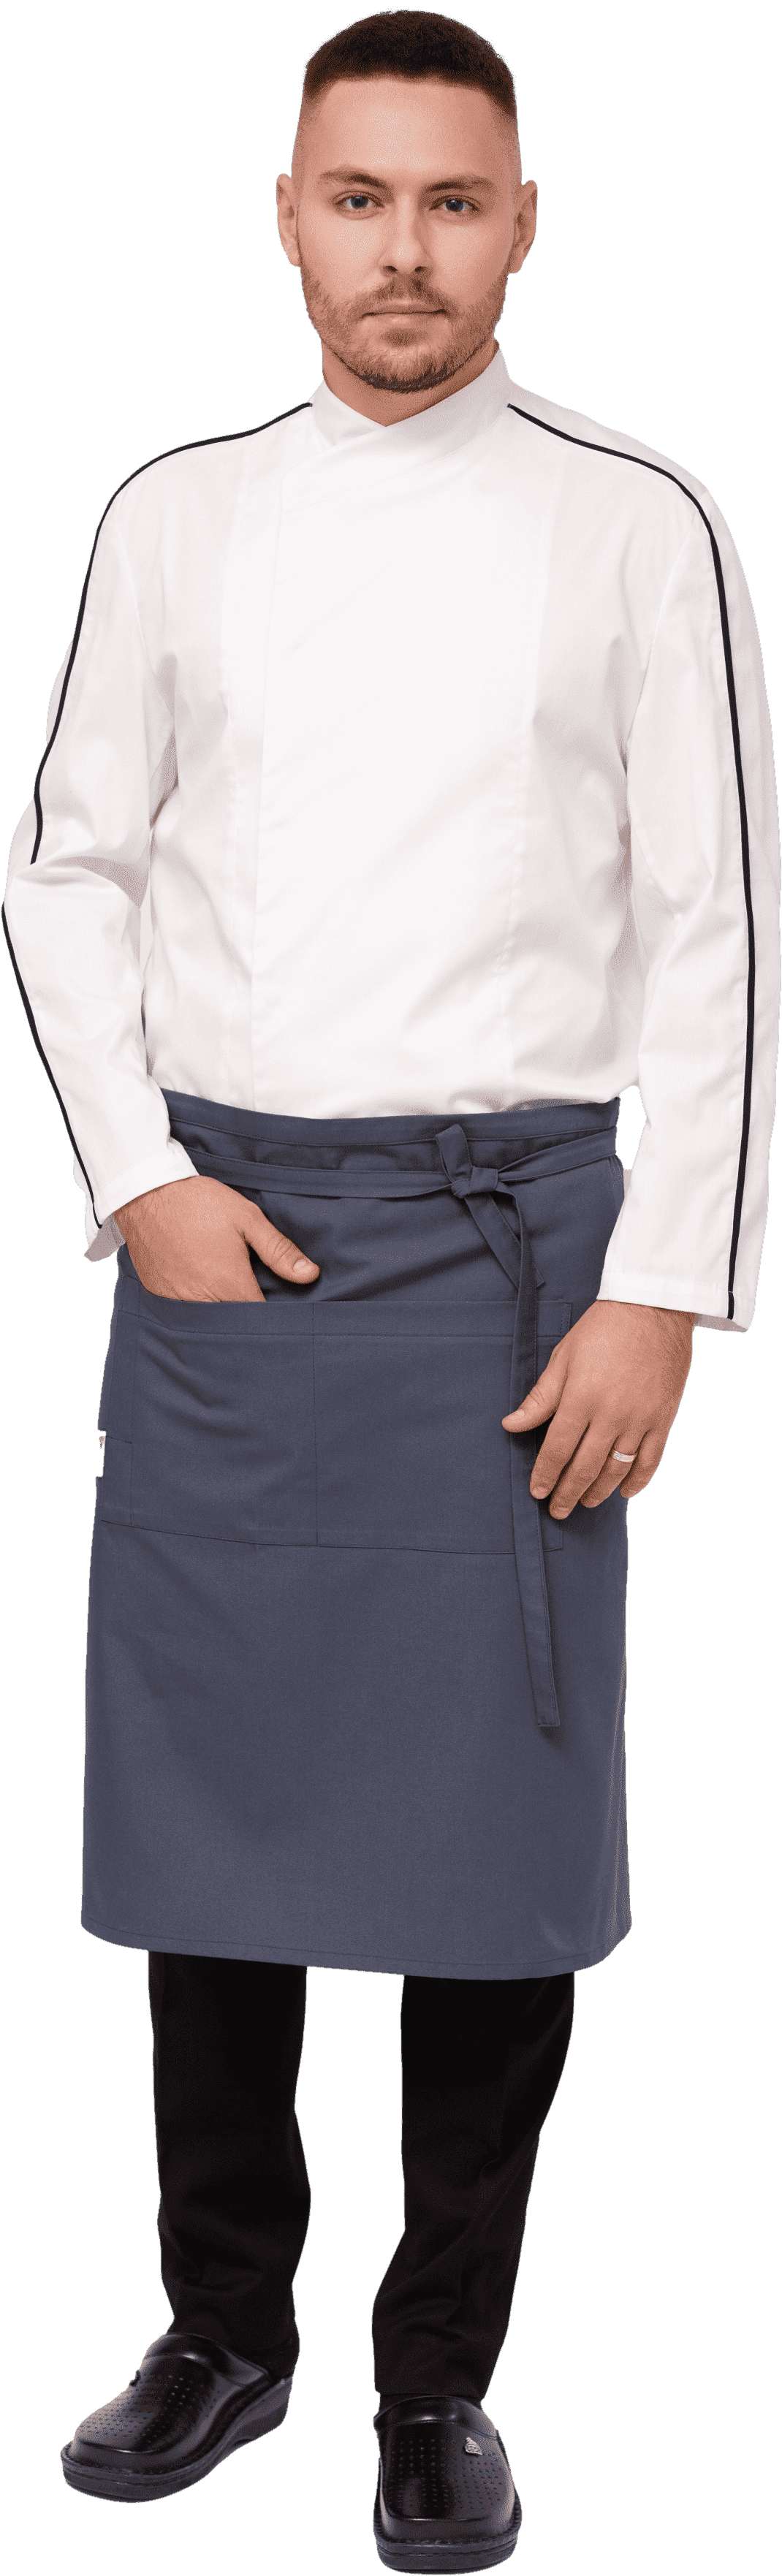 Комплект для повара JACSON - китель / фартук / брюки мужской 0